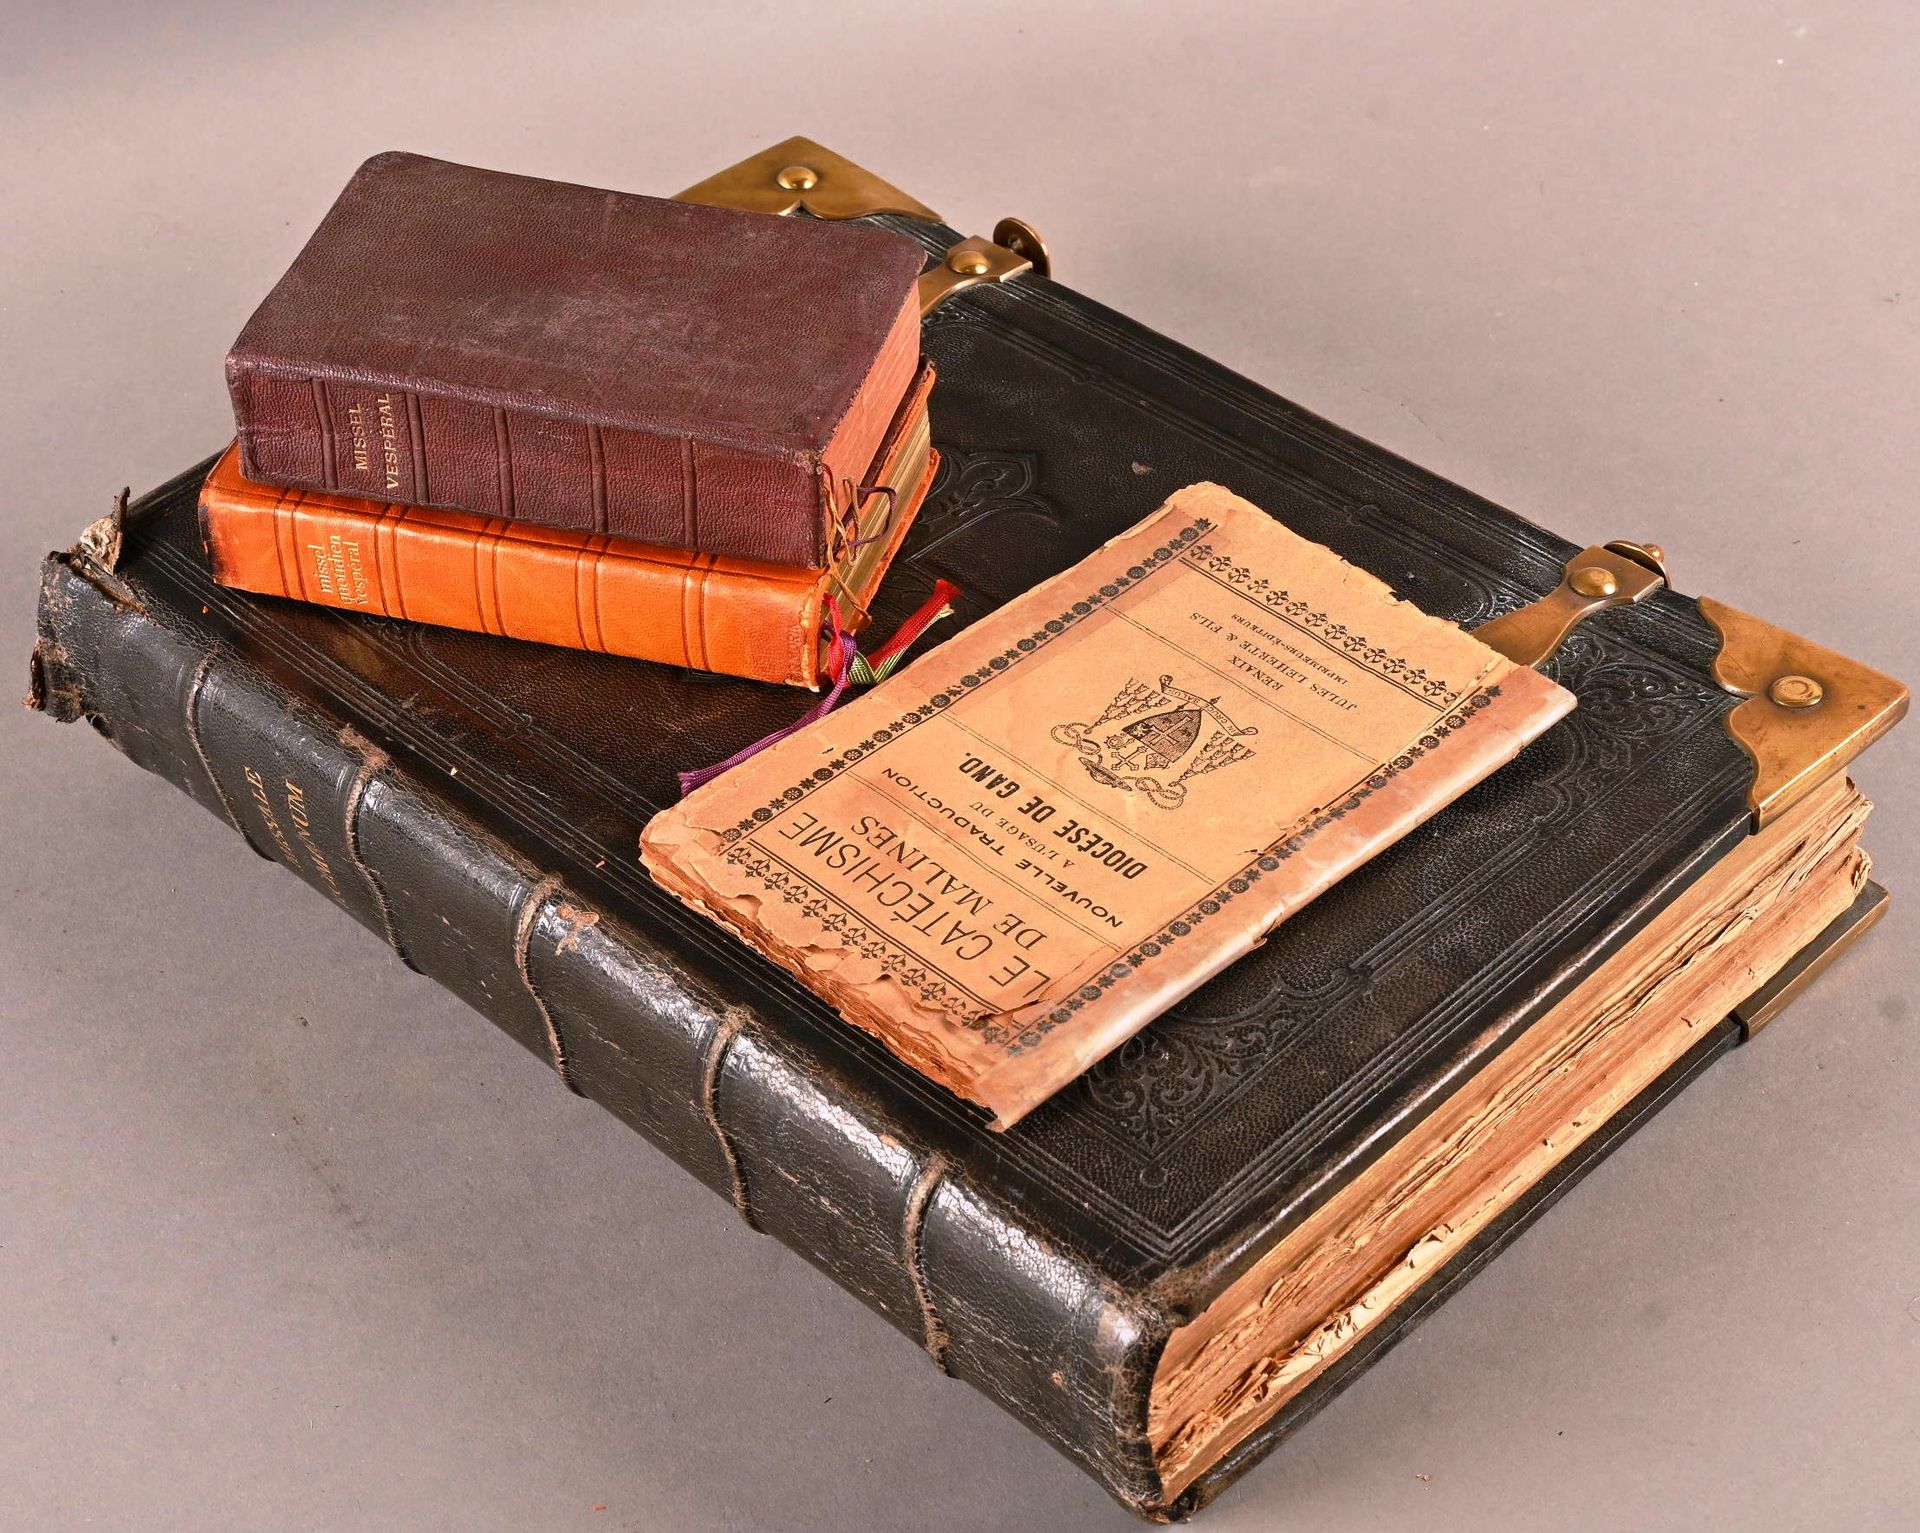 Missale Romanum, 1872. Missale Romanum, 1872.
In gebrauchtem Zustand mit Rissen &hellip;